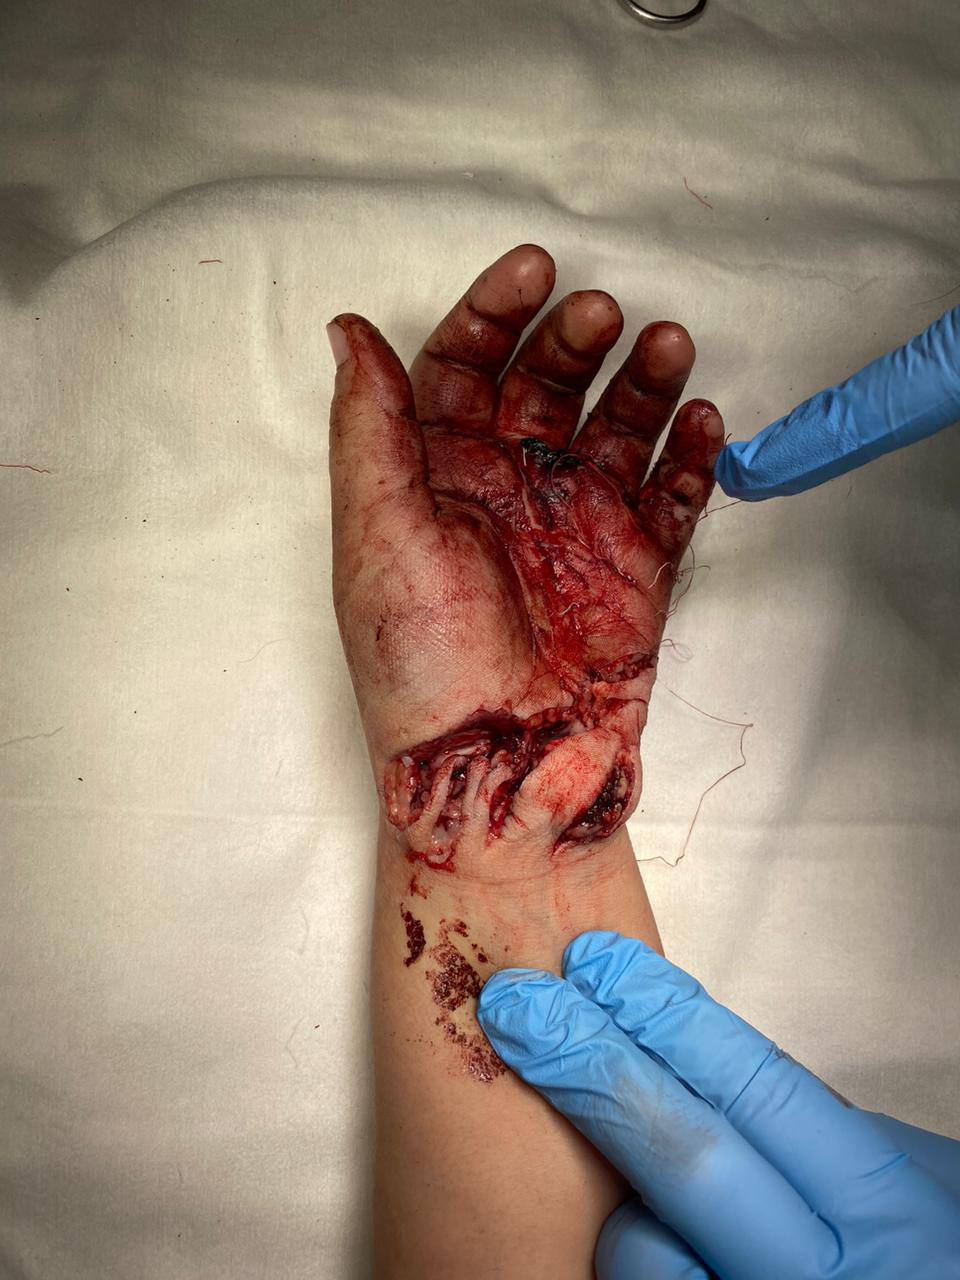 Микрохирурги Педиатрического университета 10 часов оперировали ребёнка, рука которого попала в блендер